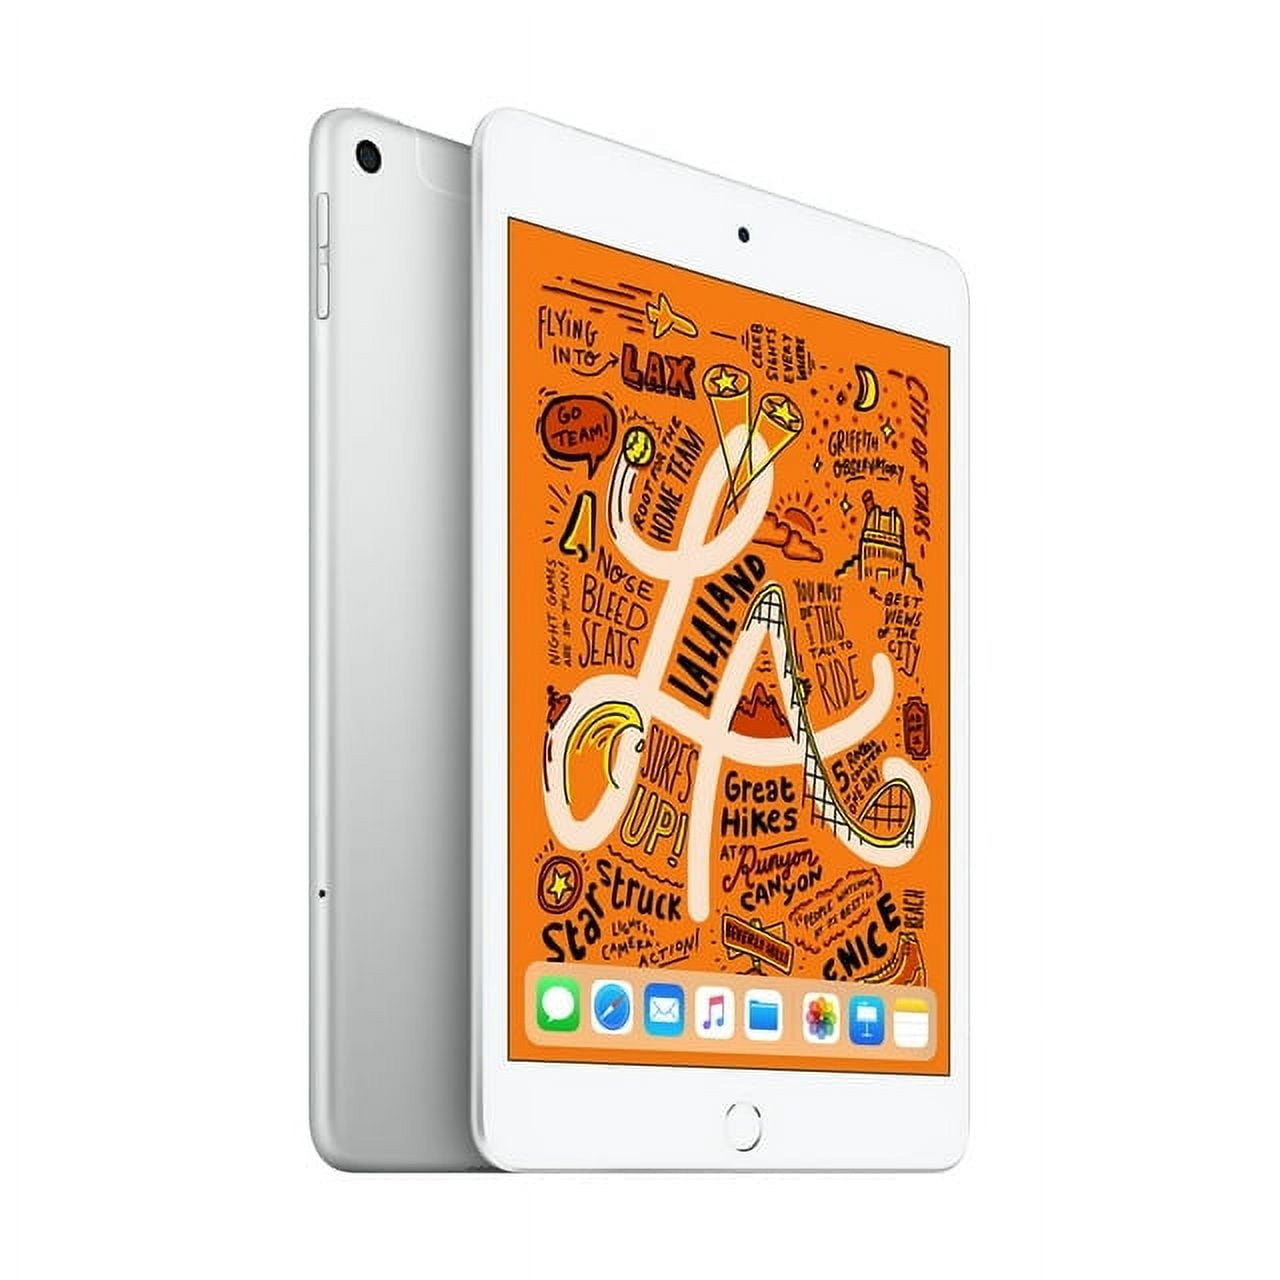 10.2-inch iPad Wi‑Fi 64GB - Space Gray